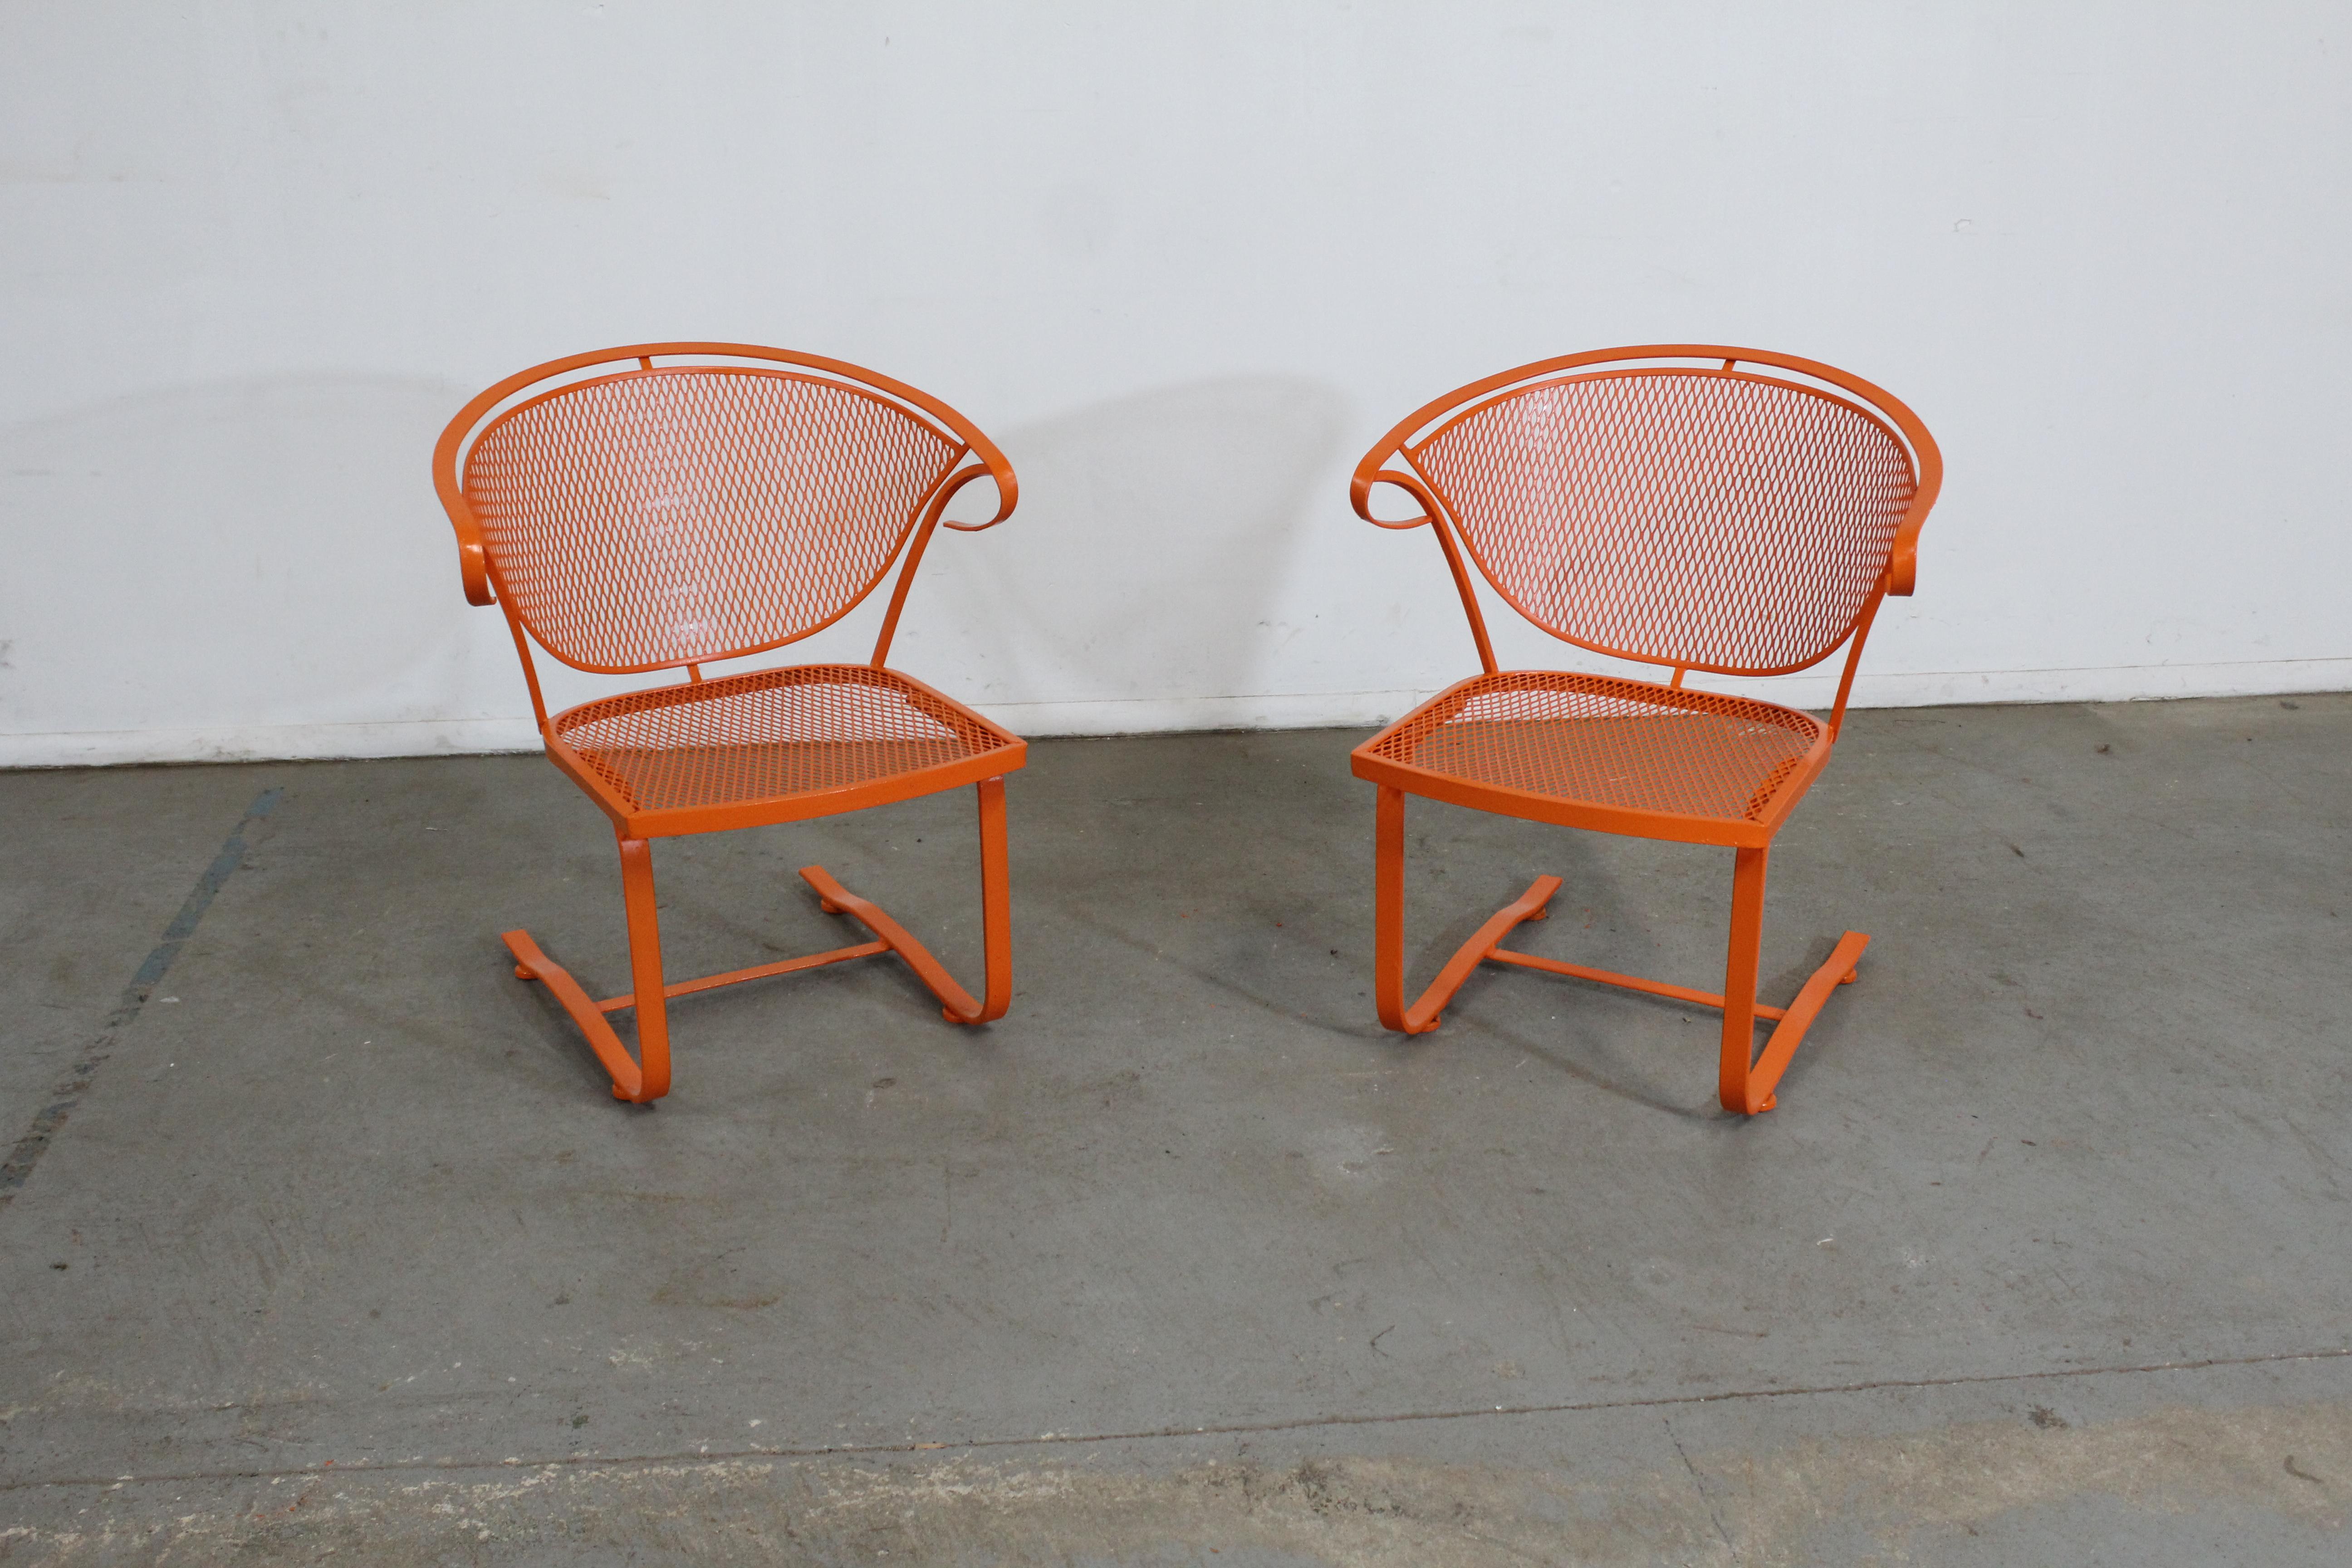 Paire de chaises d'extérieur en métal à dossier incurvé, style Salterini, du milieu du siècle dernier, orange atomique

Nous vous proposons une paire de chaises d'extérieur en métal à dossier incurvé Atomic orange, datant du milieu du siècle